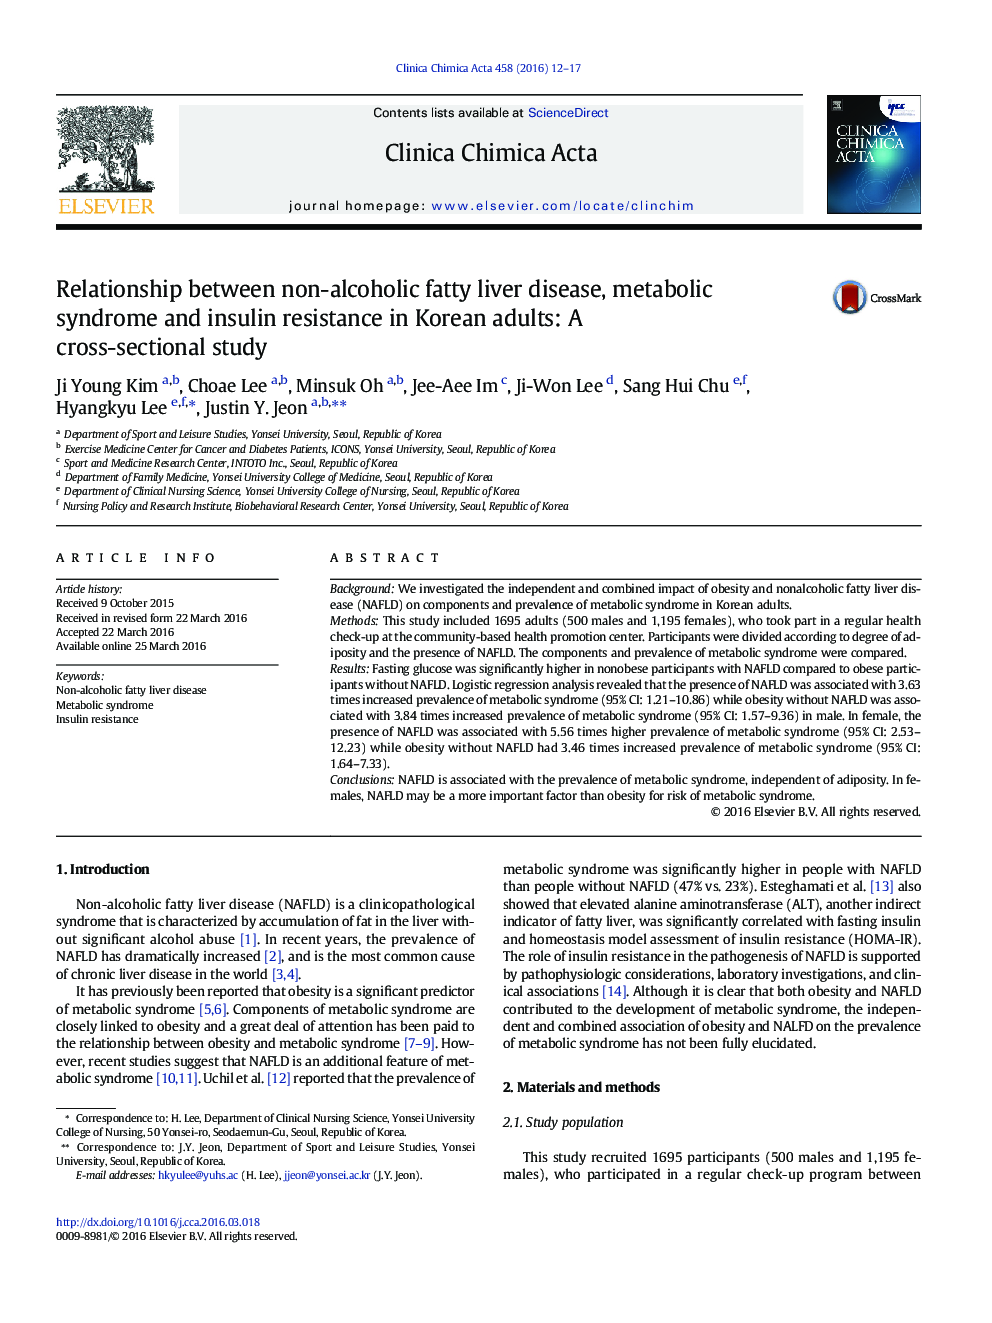 ارتباط بین بیماری کبد چرب غیرالکلی، سندرم متابولیک و مقاومت به انسولین در بزرگسالان کره ای: یک مطالعه مقطعی